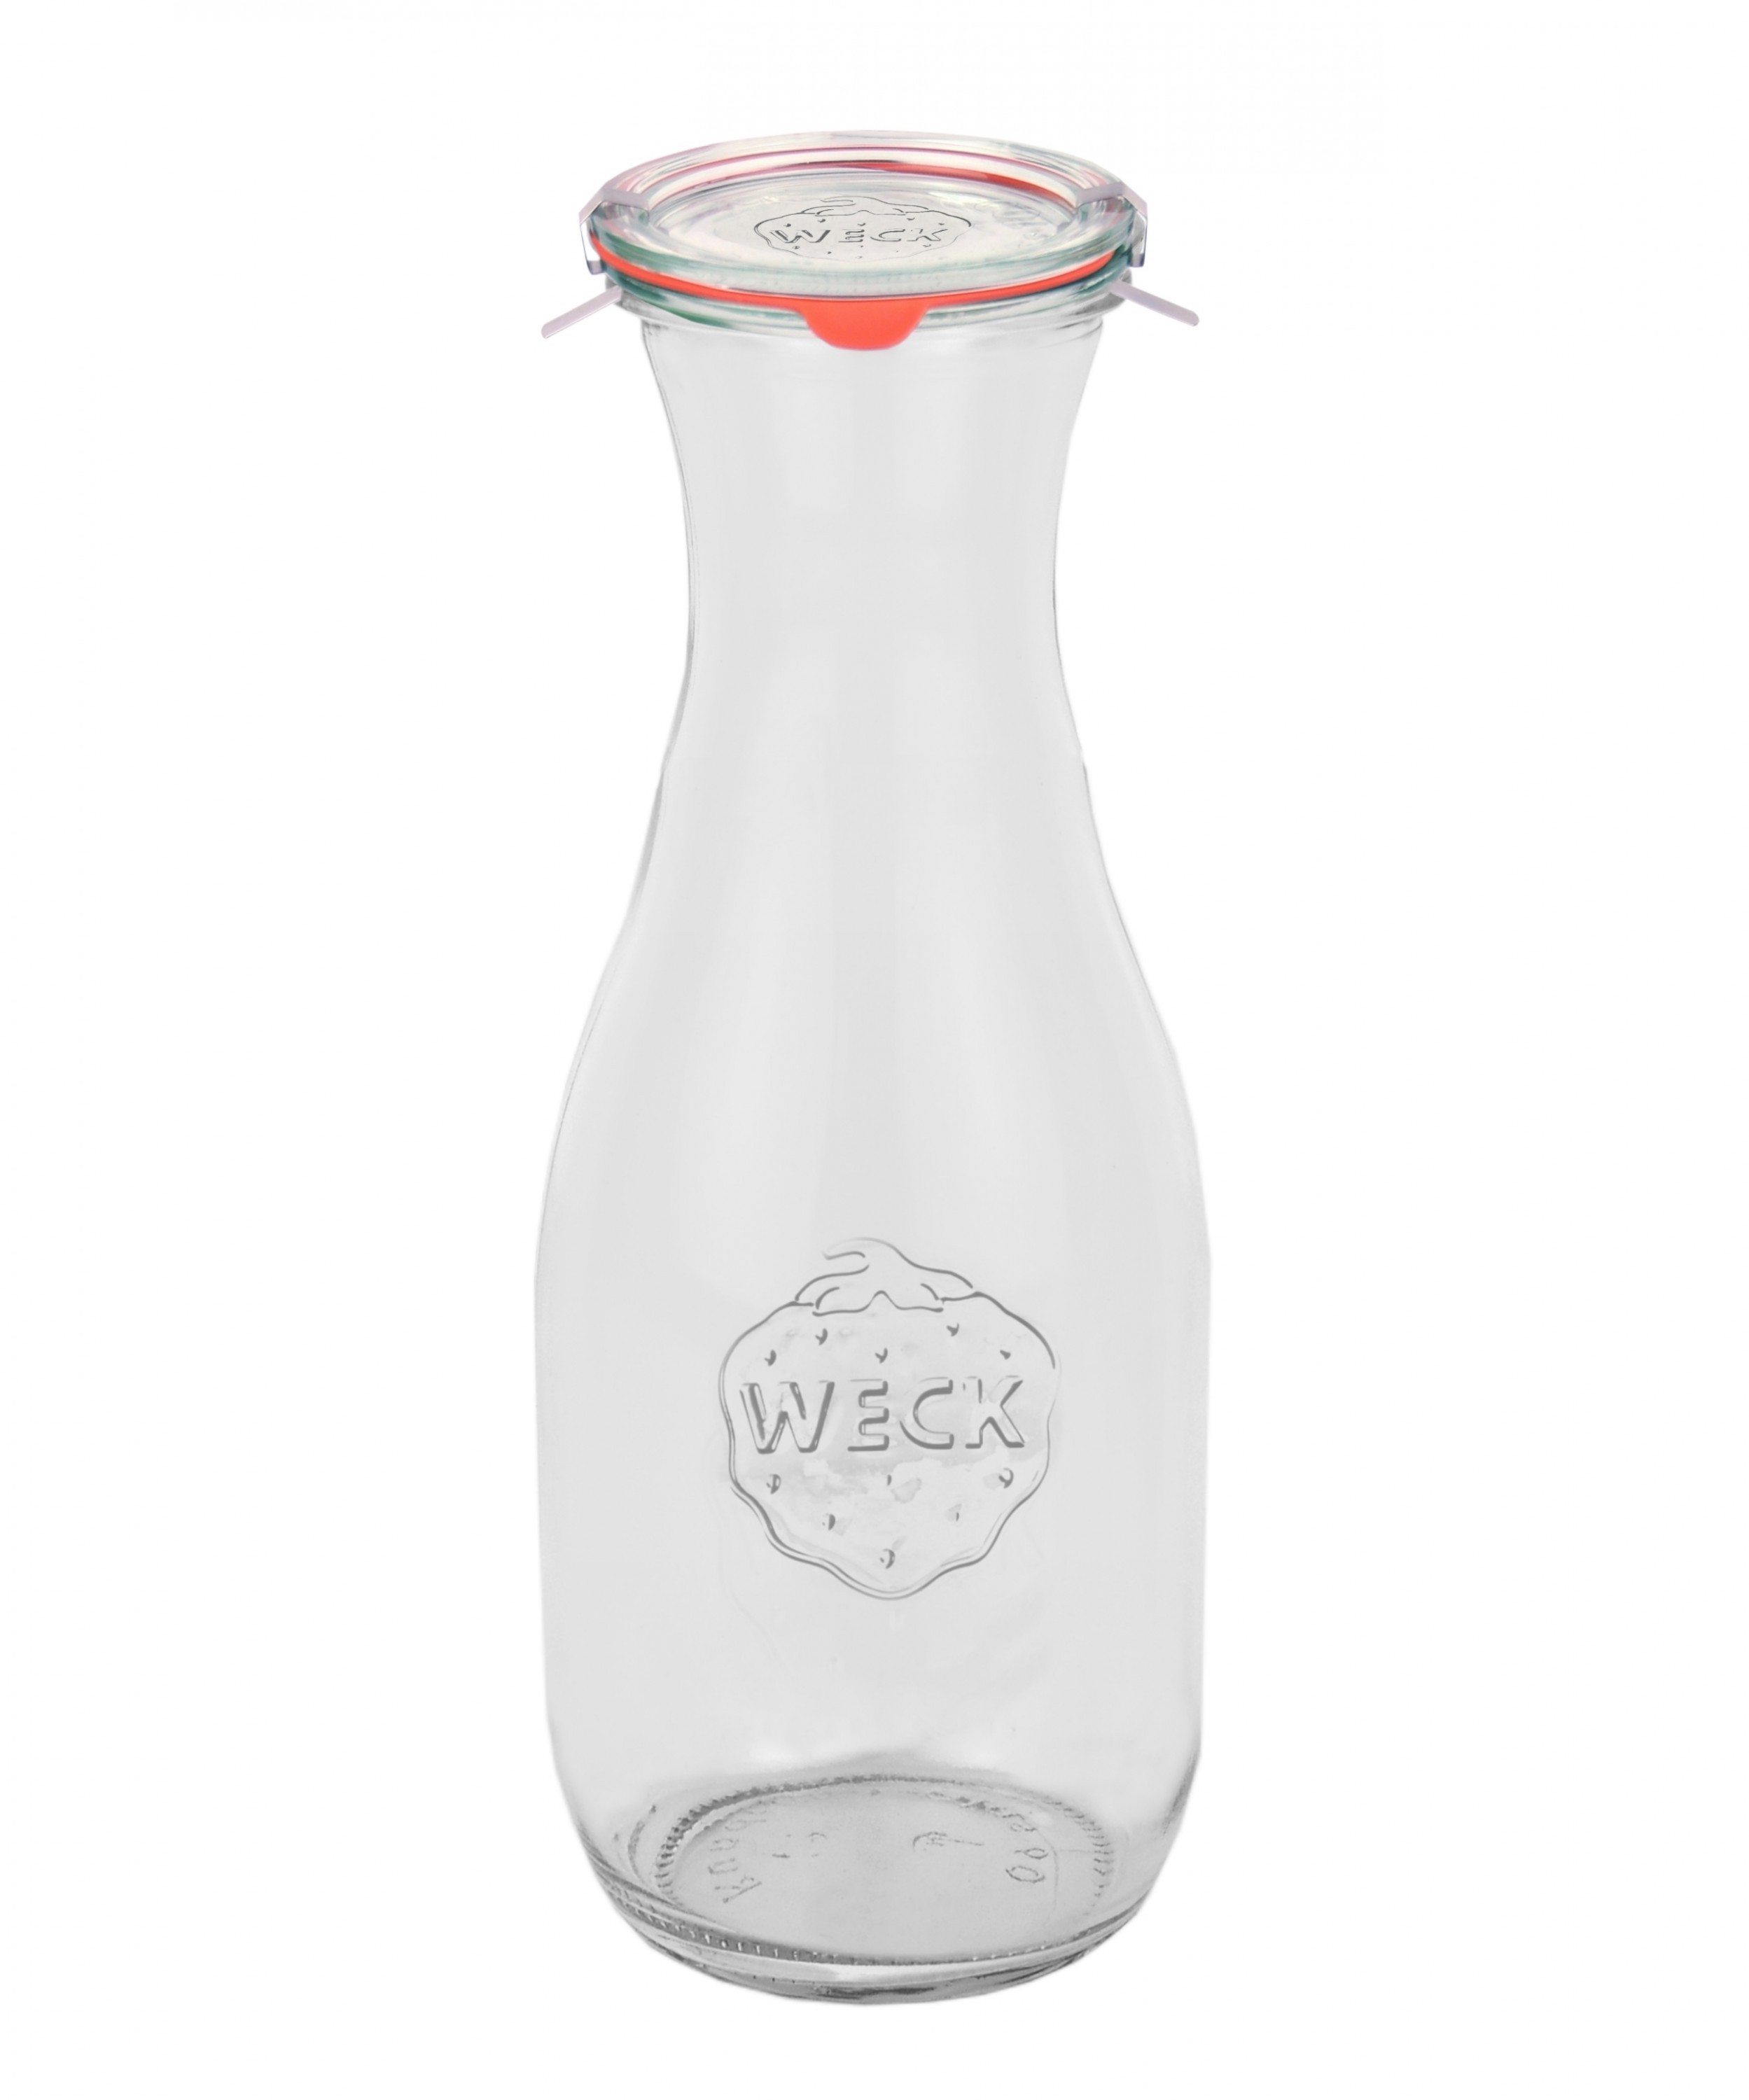 24 Weck Gläser 530ml Saftflasche Deckel Gummi Klammer Einmachglas Einweckglas